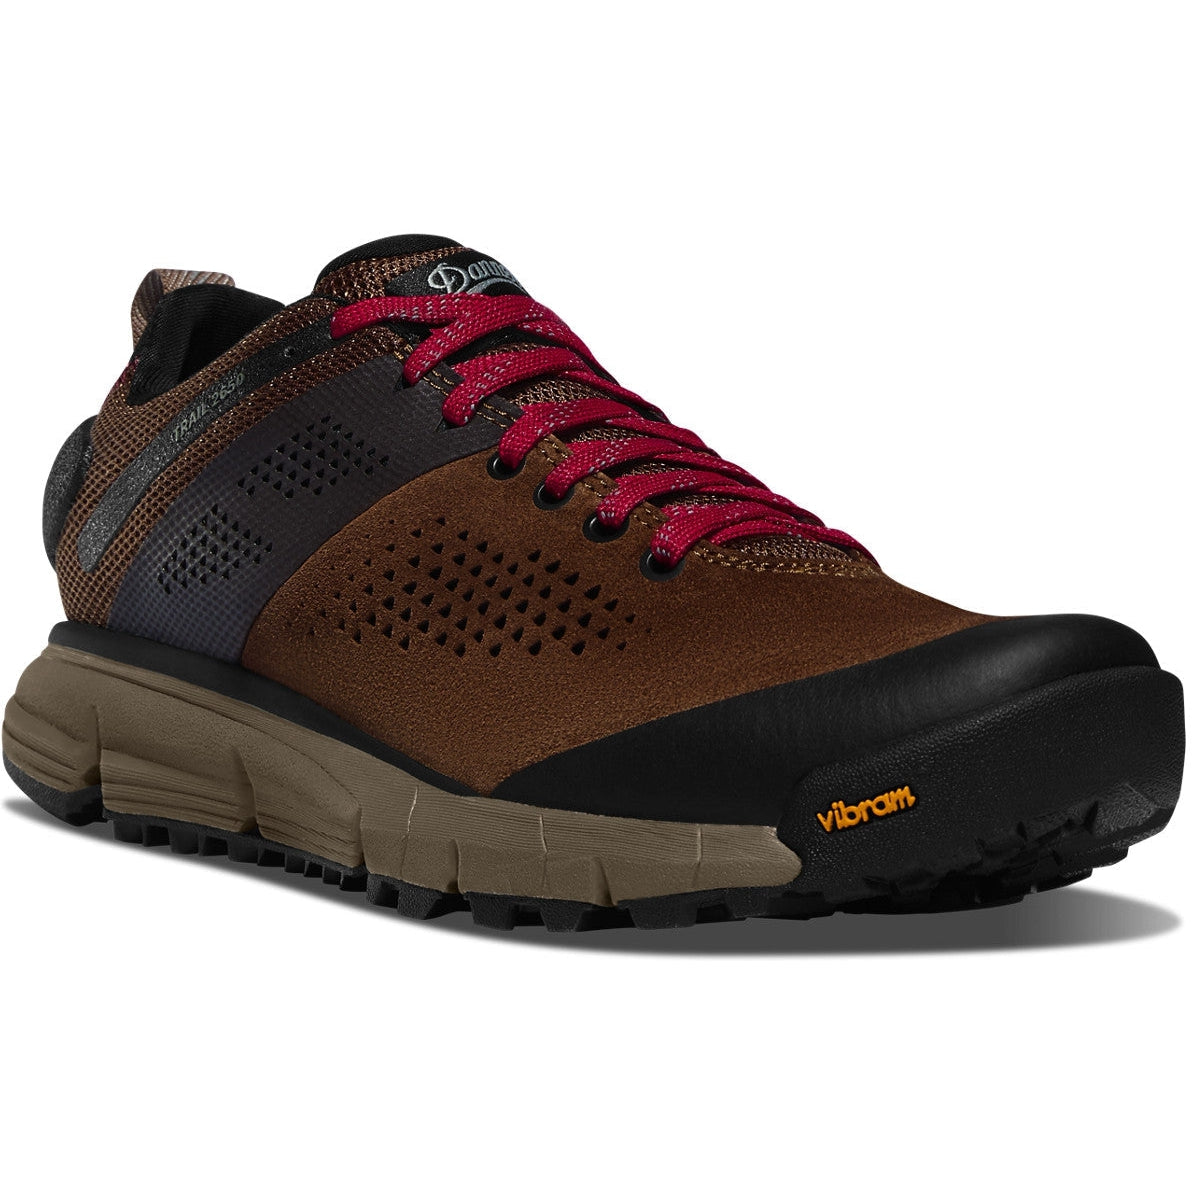 Danner Women's Trail 2650 GTX 3" Hiker Shoe - Brown/Red - 61300  - Overlook Boots